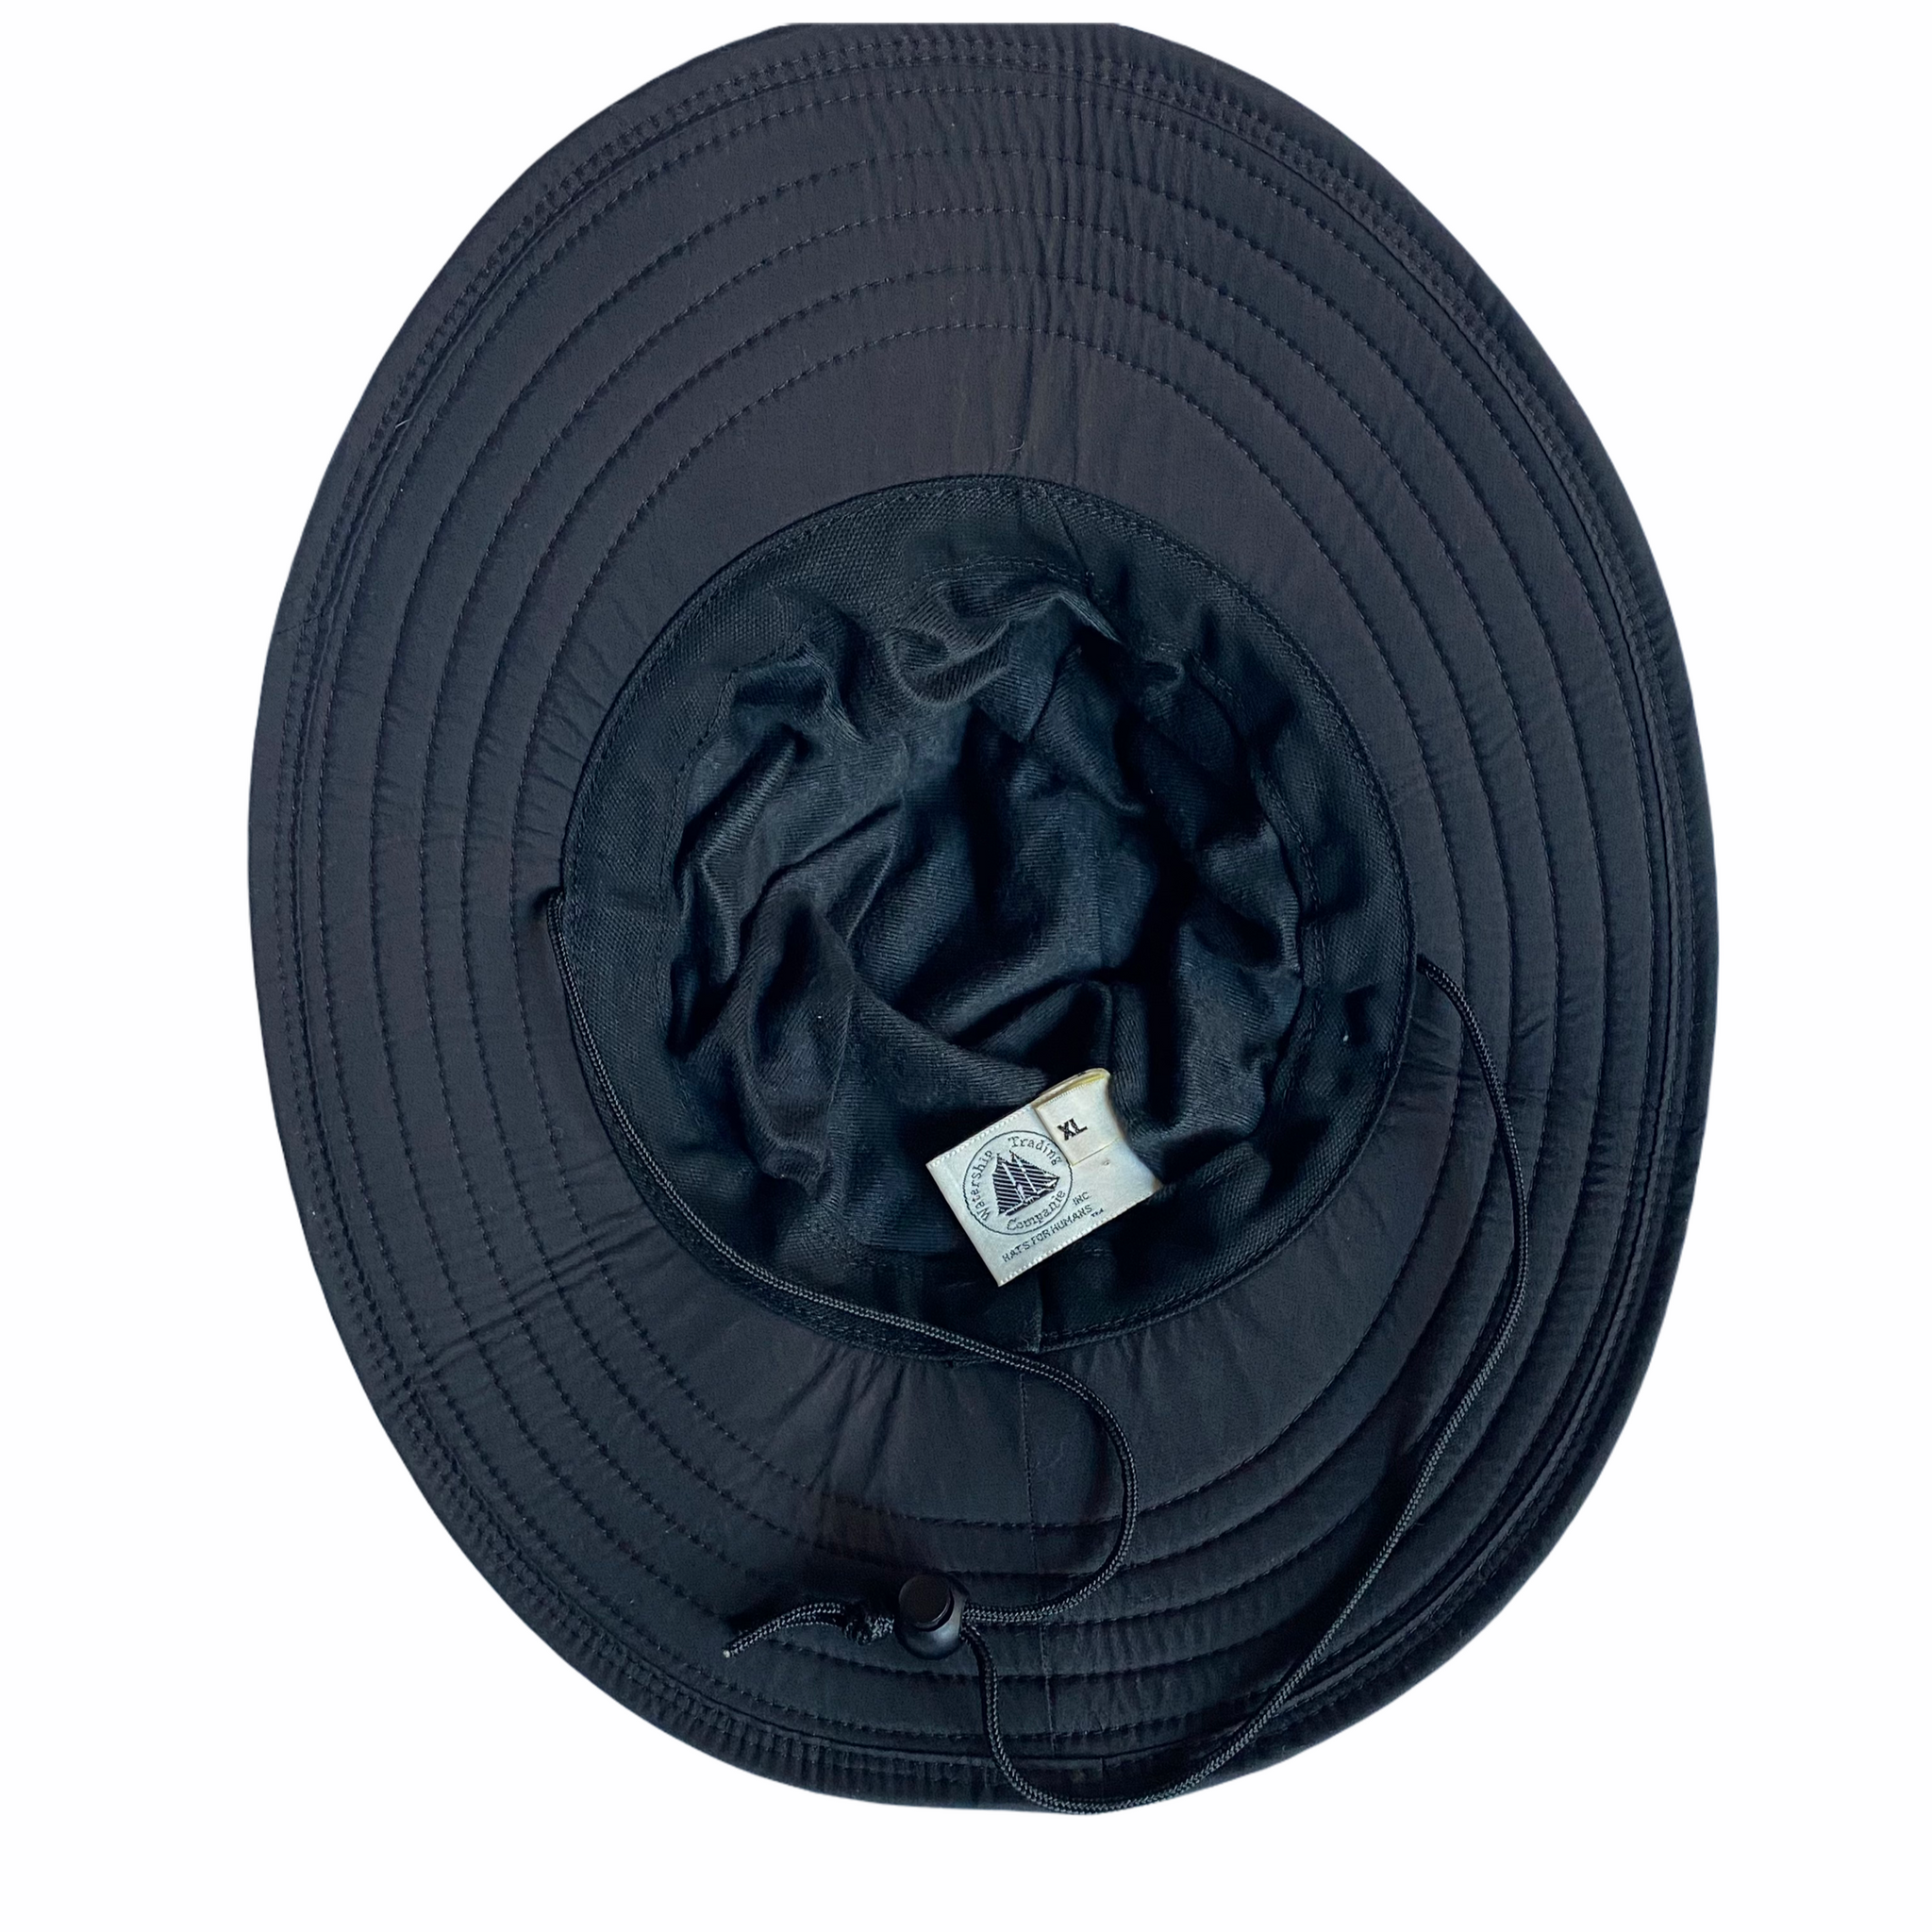 Nylon sun/rain hat -Made in usa🇺🇸  -allot of coverage  XL